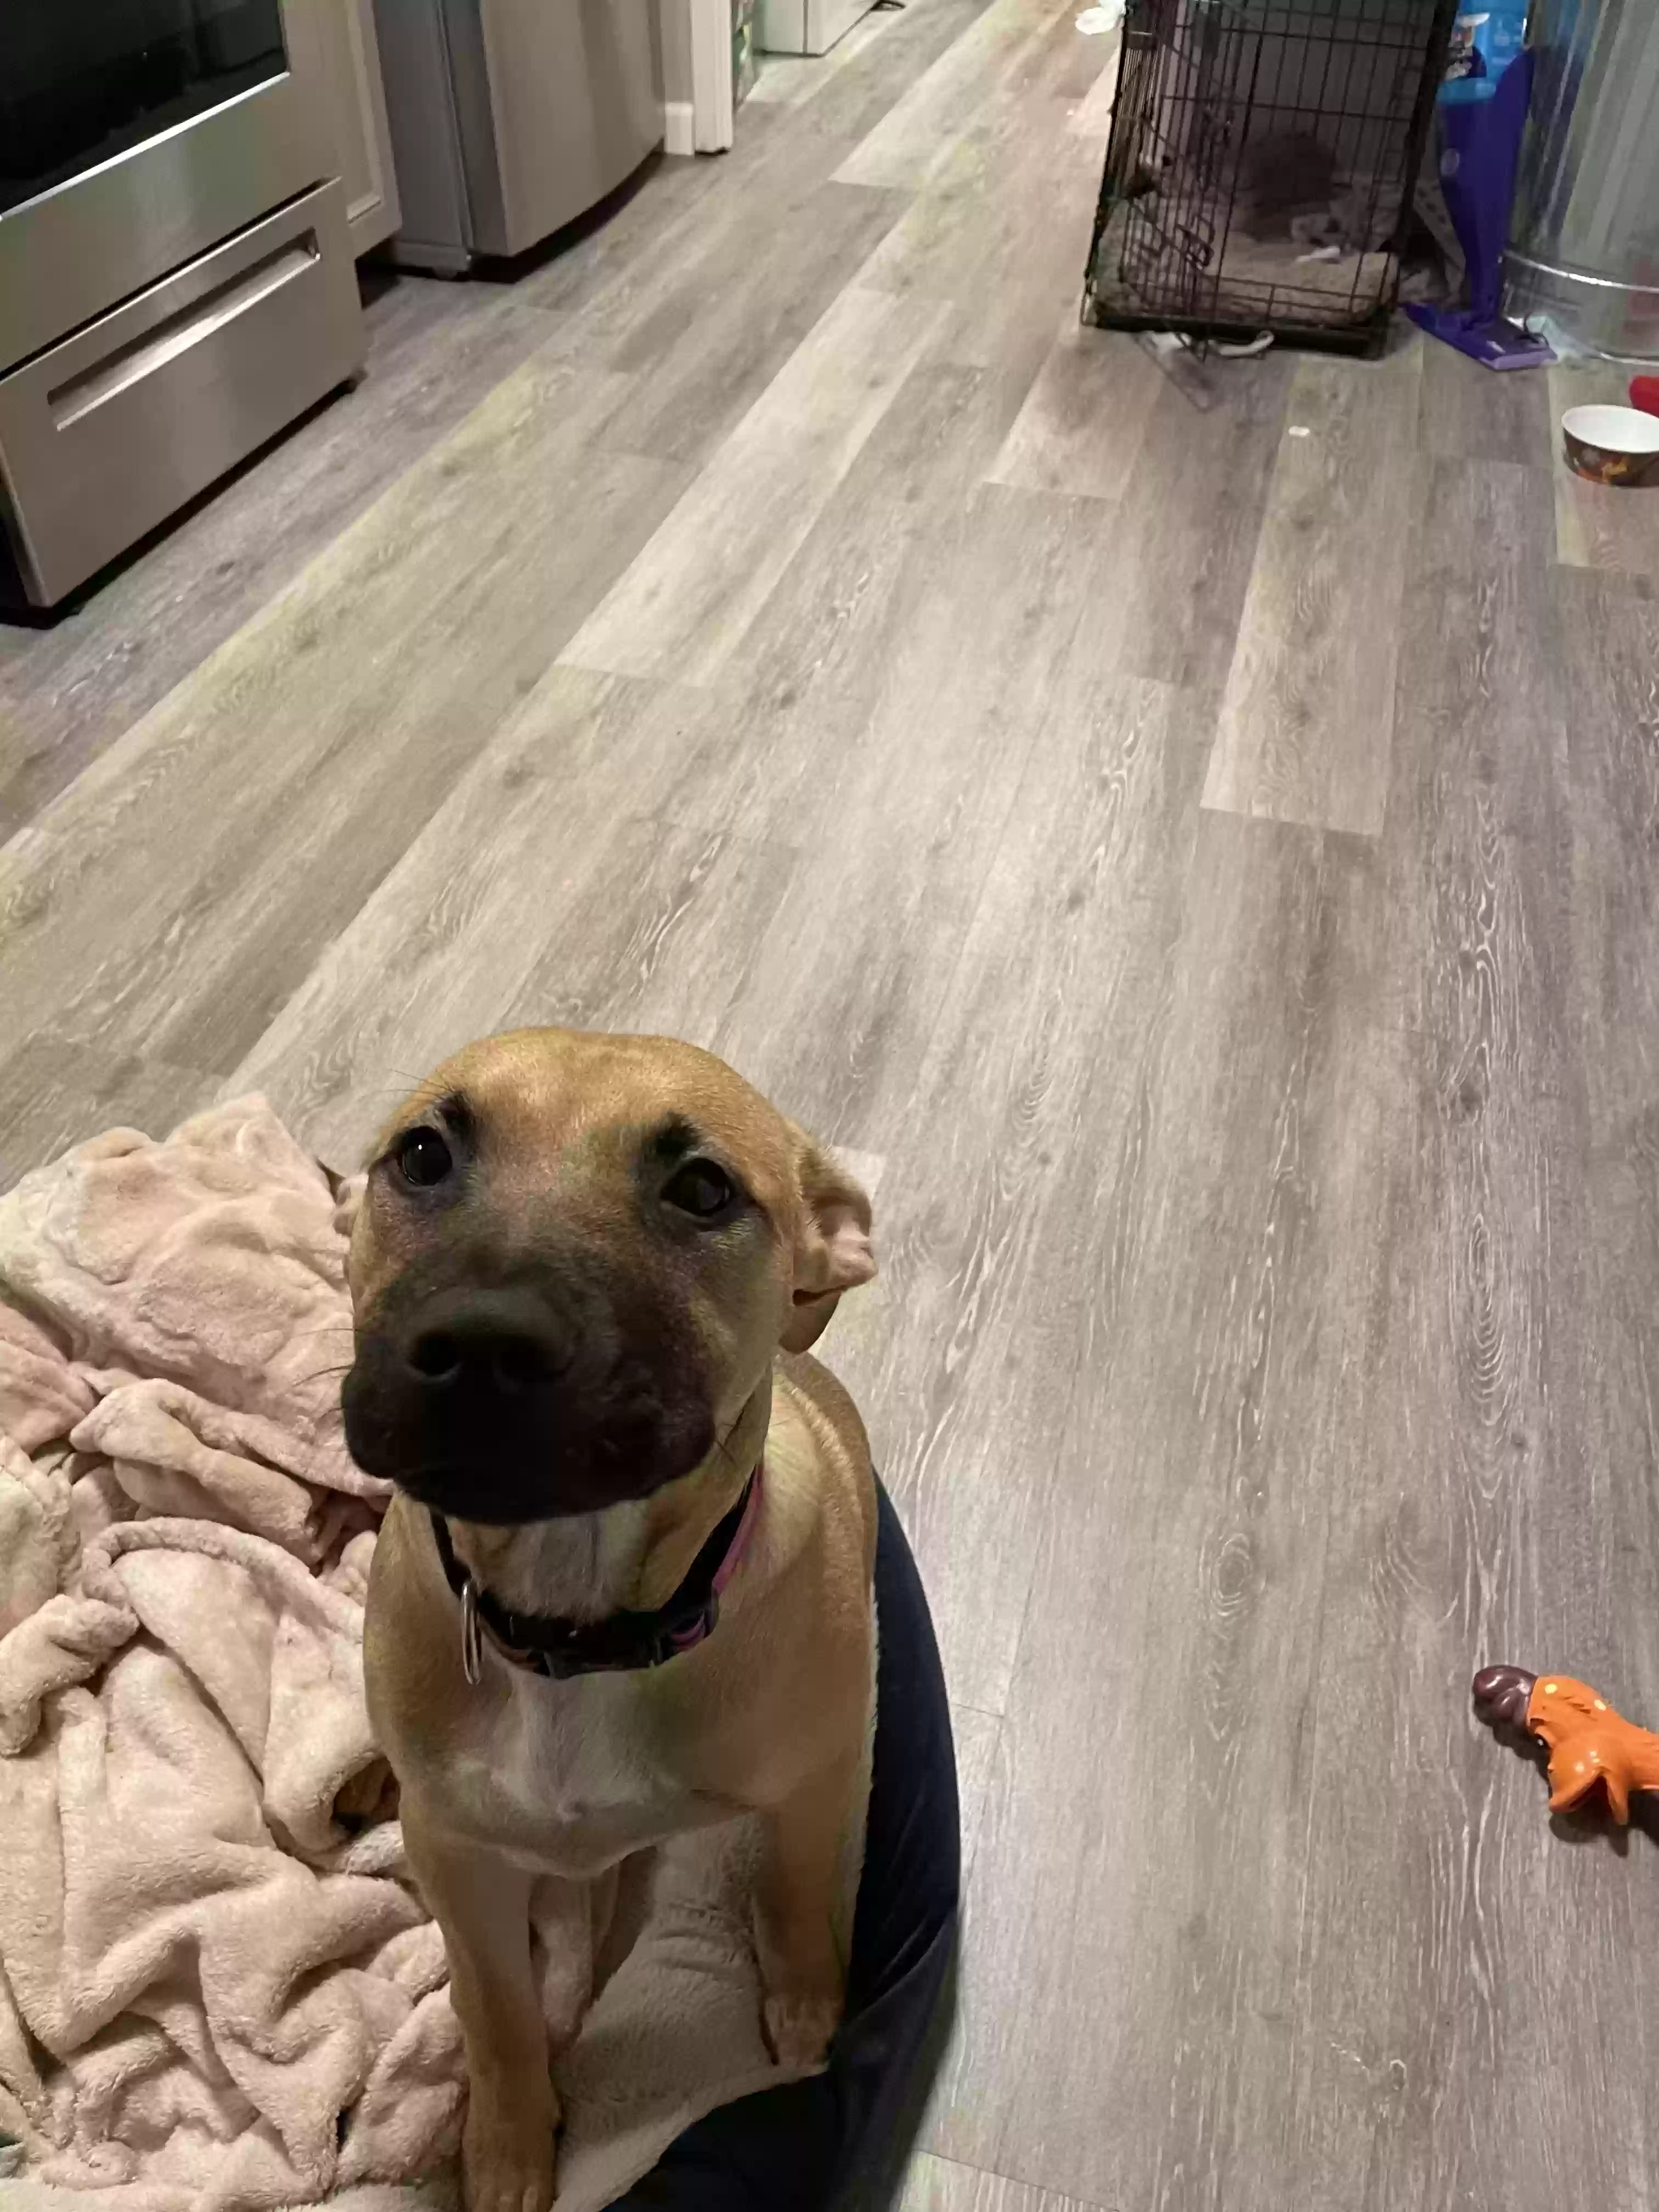 adoptable Dog in Cincinnati,OH named Rosco